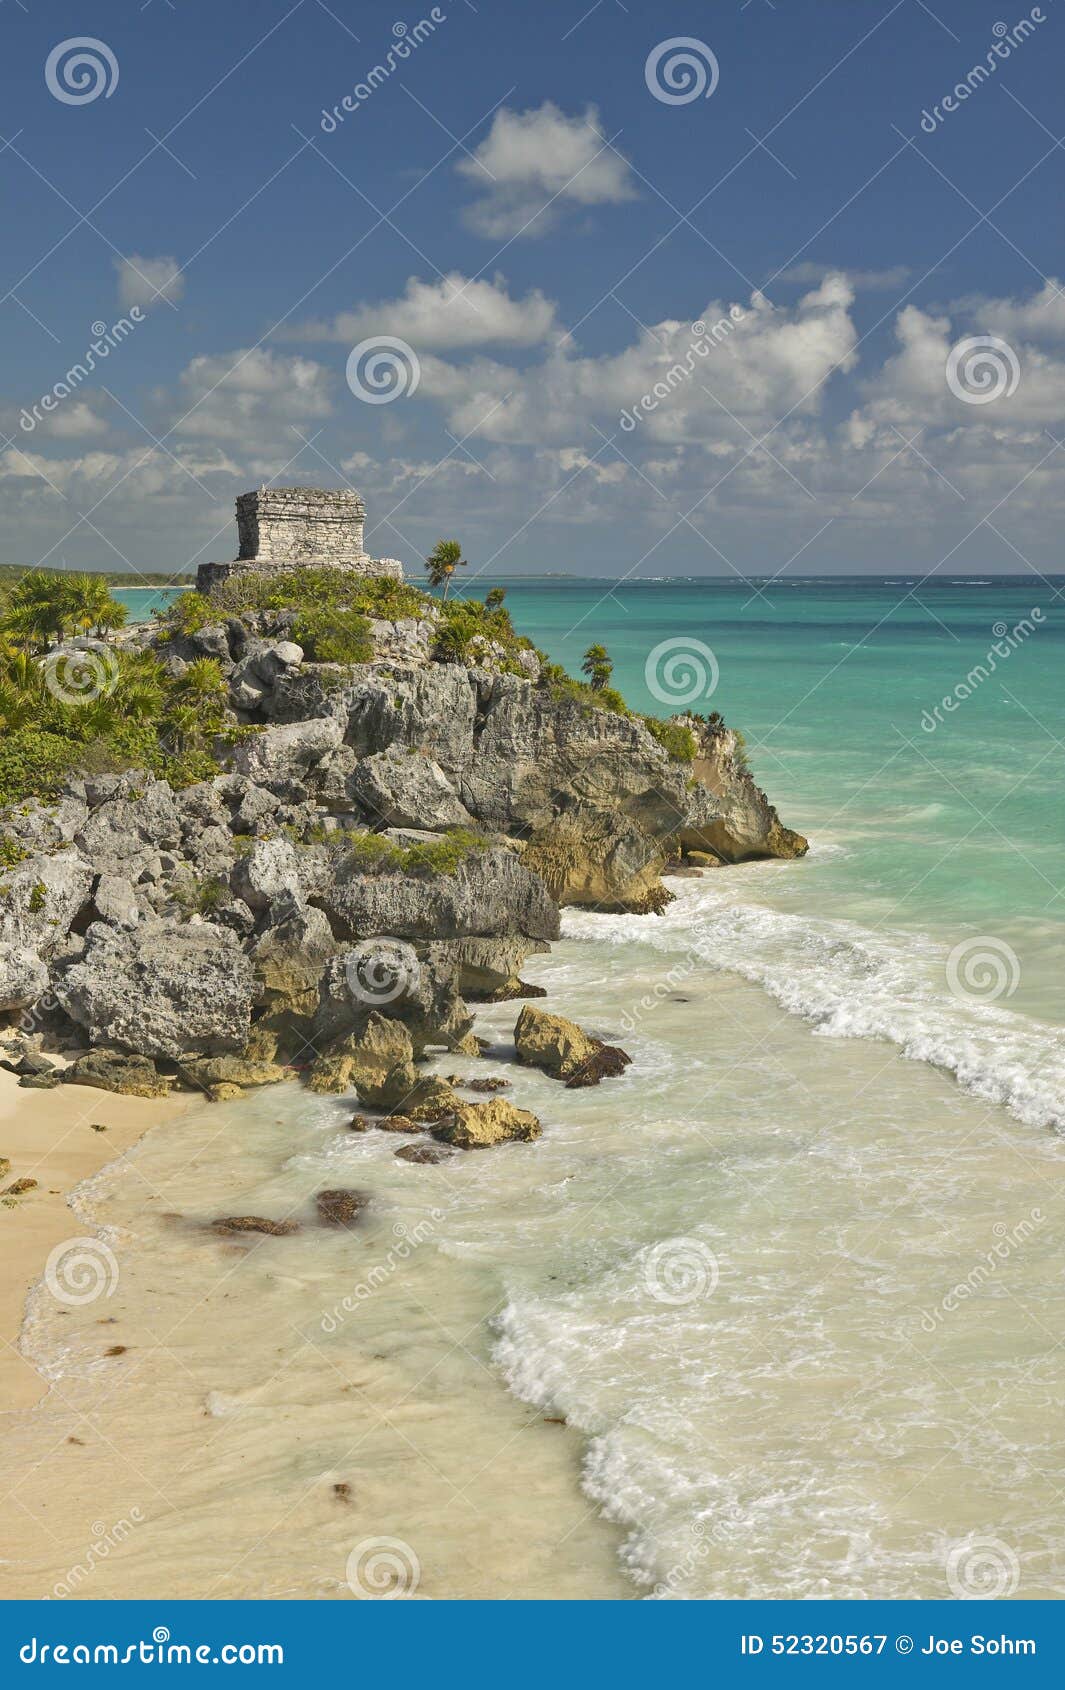 templo del dios del viento mayan ruins of ruinas de tulum (tulum ruins) in quintana roo, yucatan peninsula, mexico